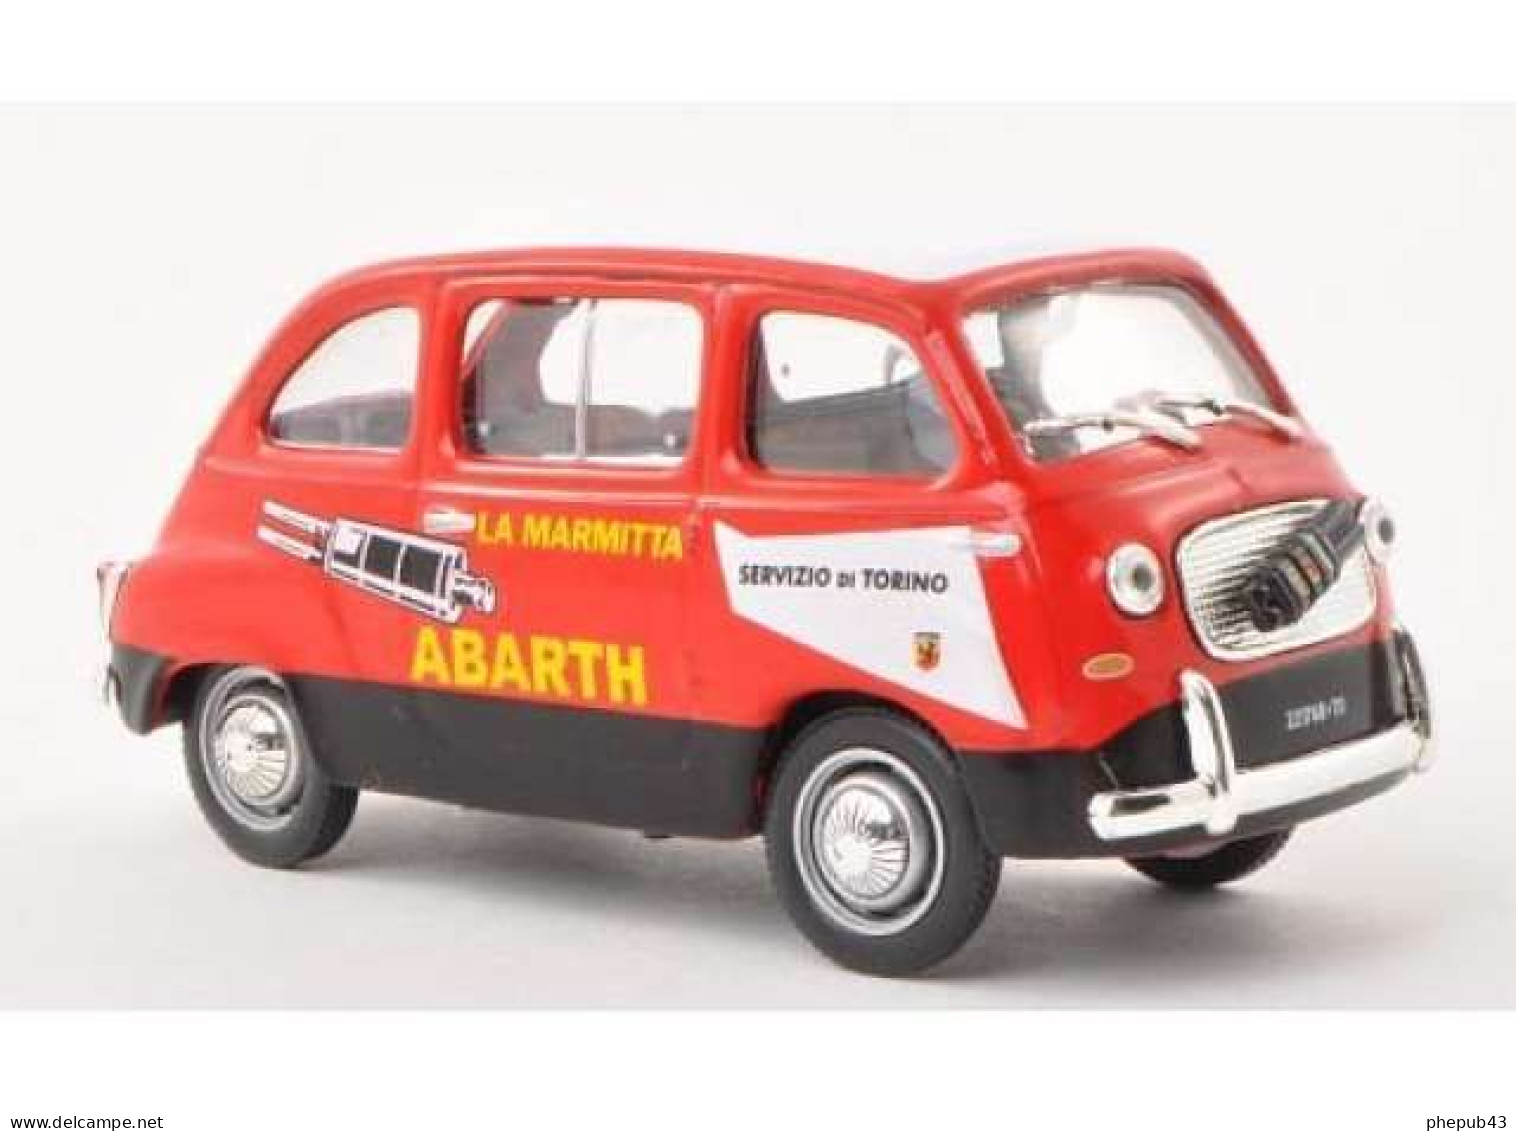 Fiat 750 Multipla Abarth - Servizio Di Torino - 1960 - Red & Black - Altaya - LKW